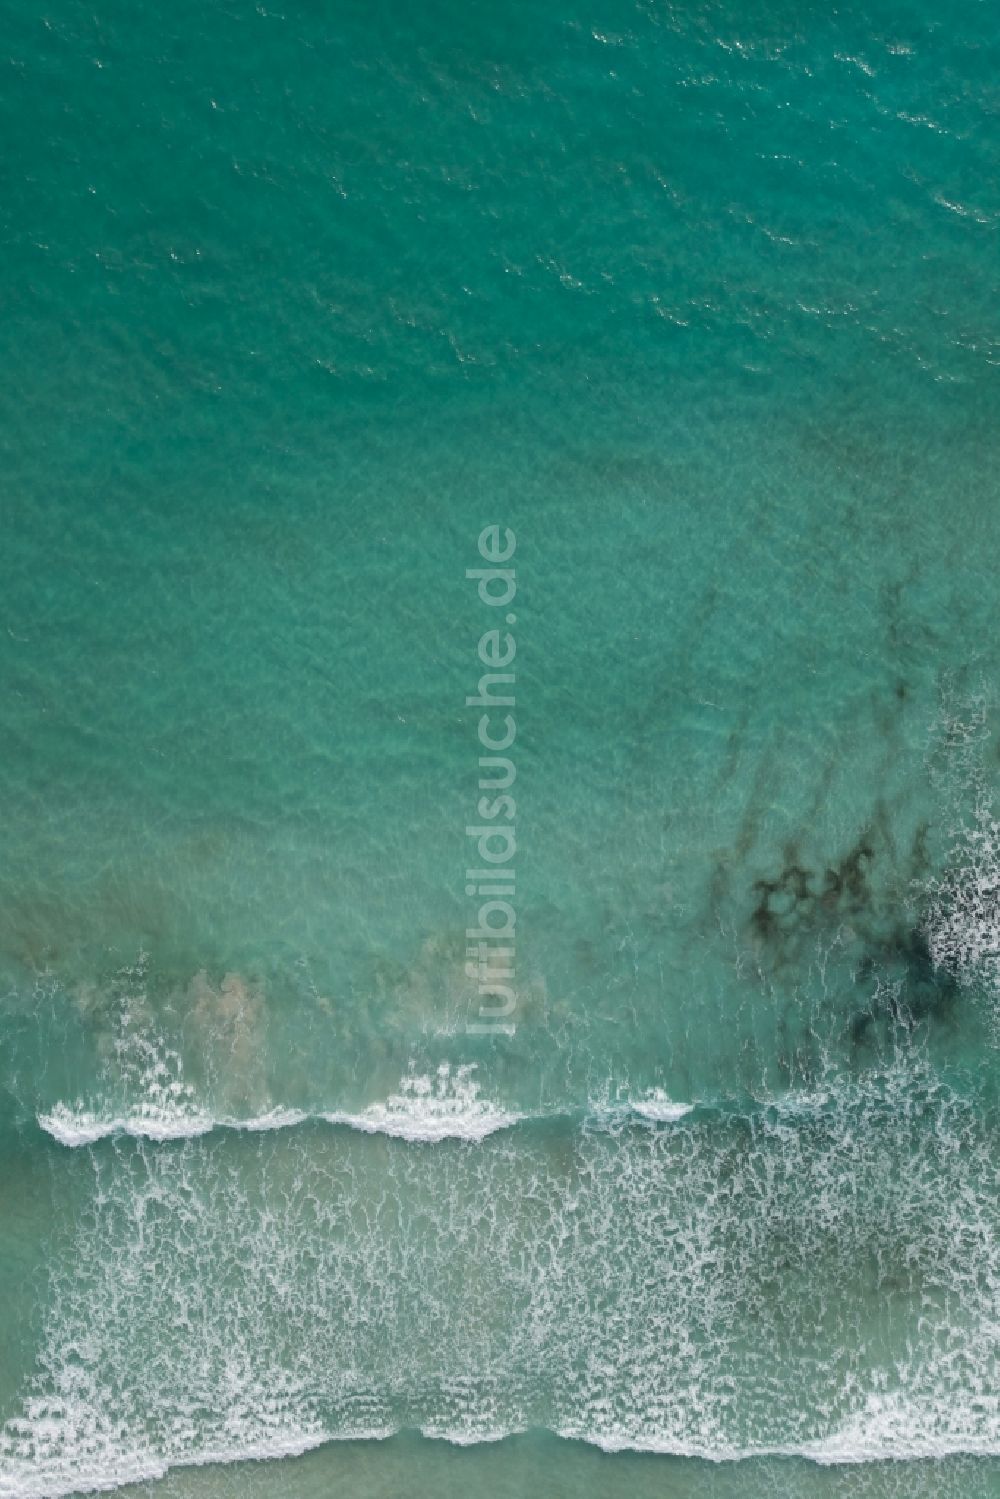 Luftbild Llucmajor - Wasseroberfläche an der Meeres- Küste des Mittelmeer in Llucmajor auf der balearischen Mittelmeerinsel Mallorca, Spanien